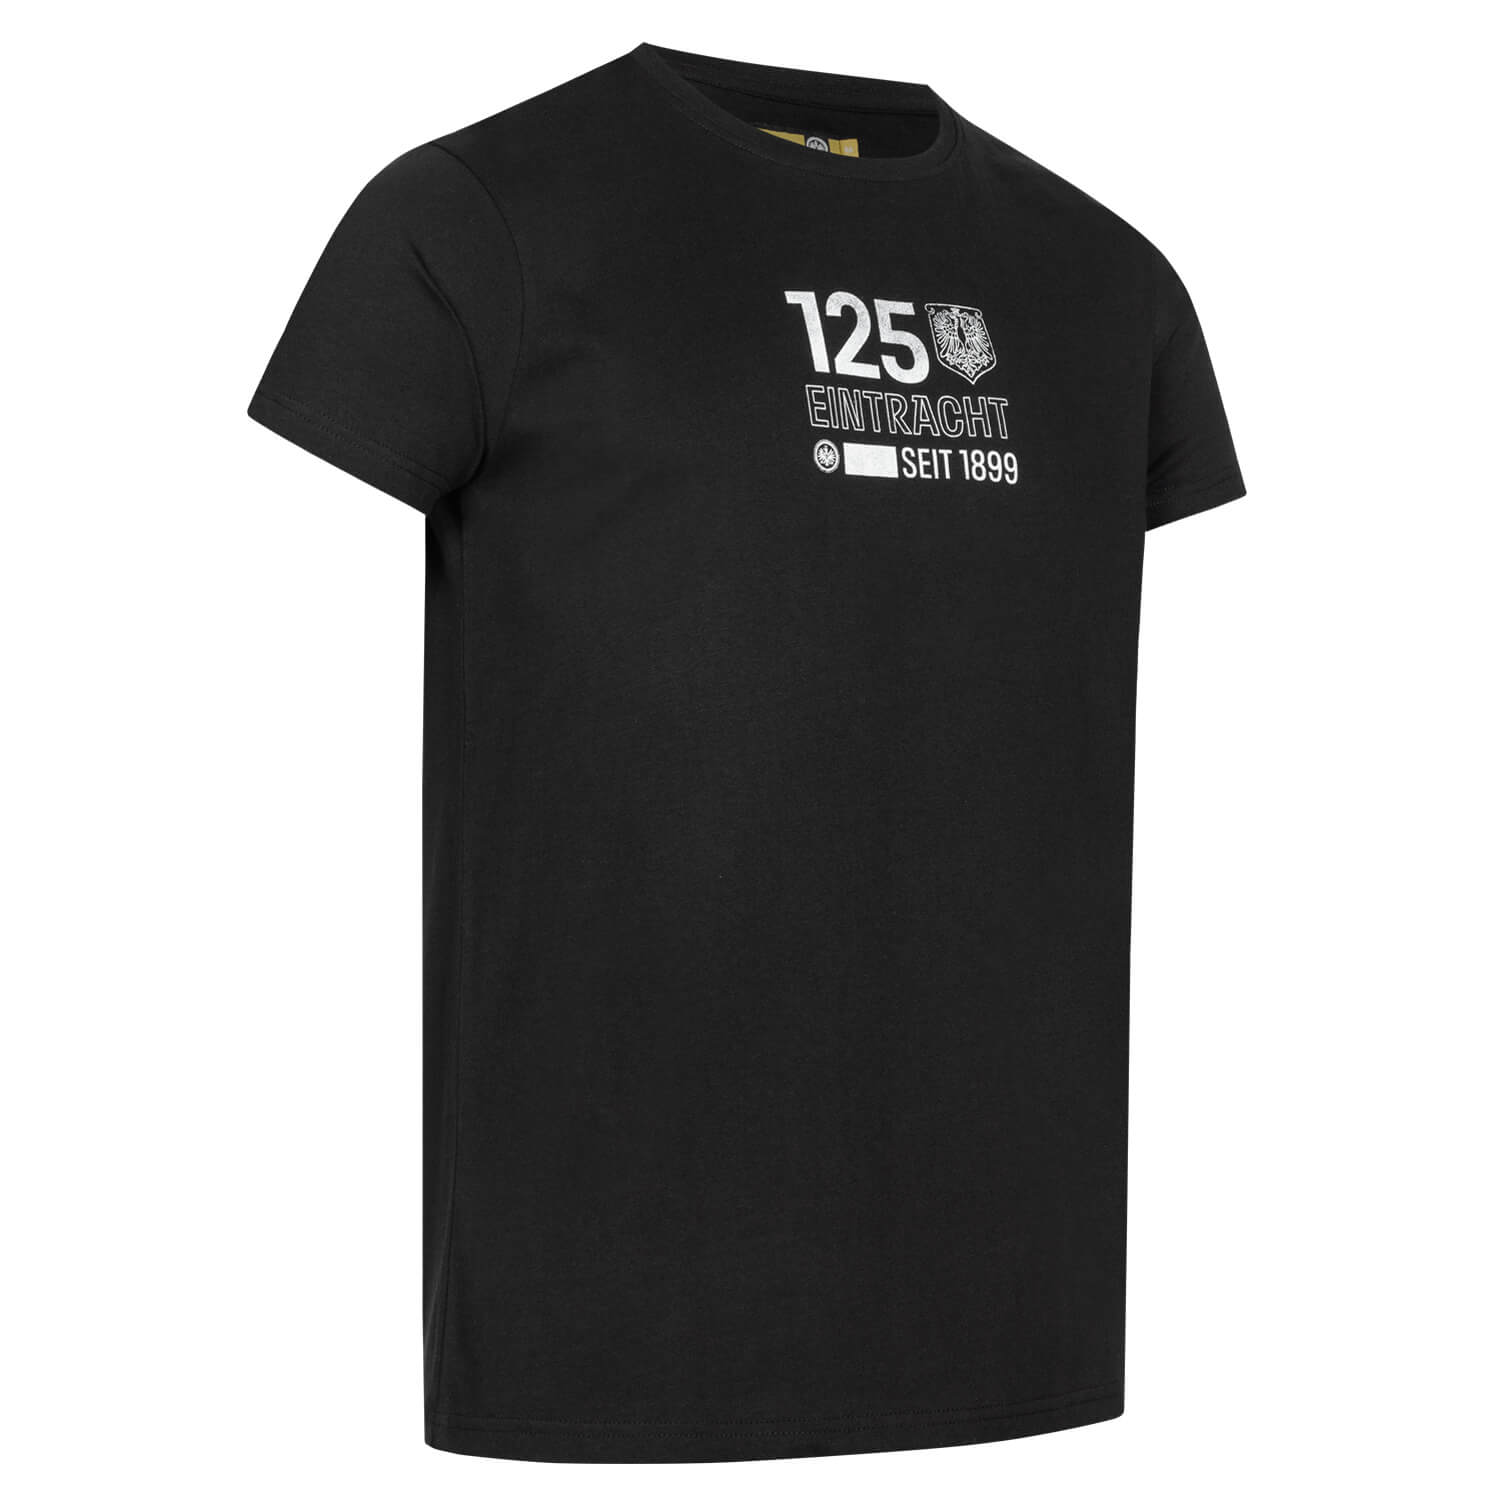 Bild 4: T-Shirt 125 Jahre backprint Logos